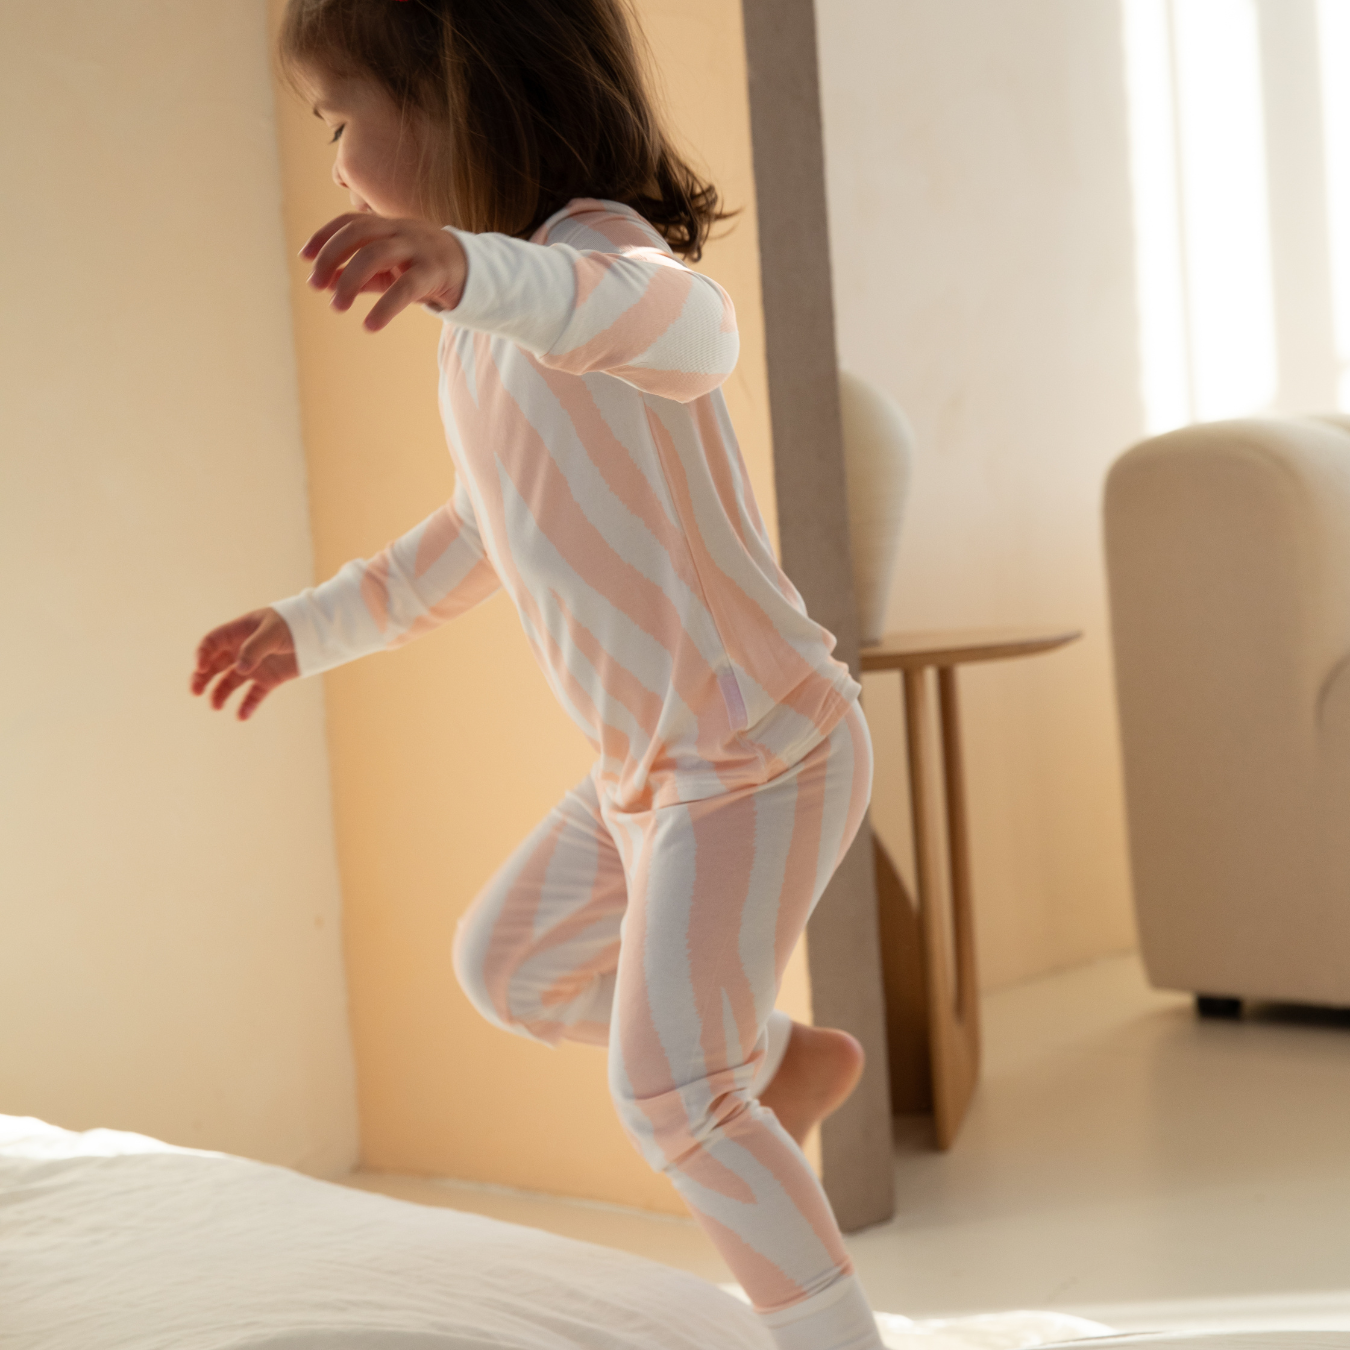 Pyjamas-set för barn med zebramönster